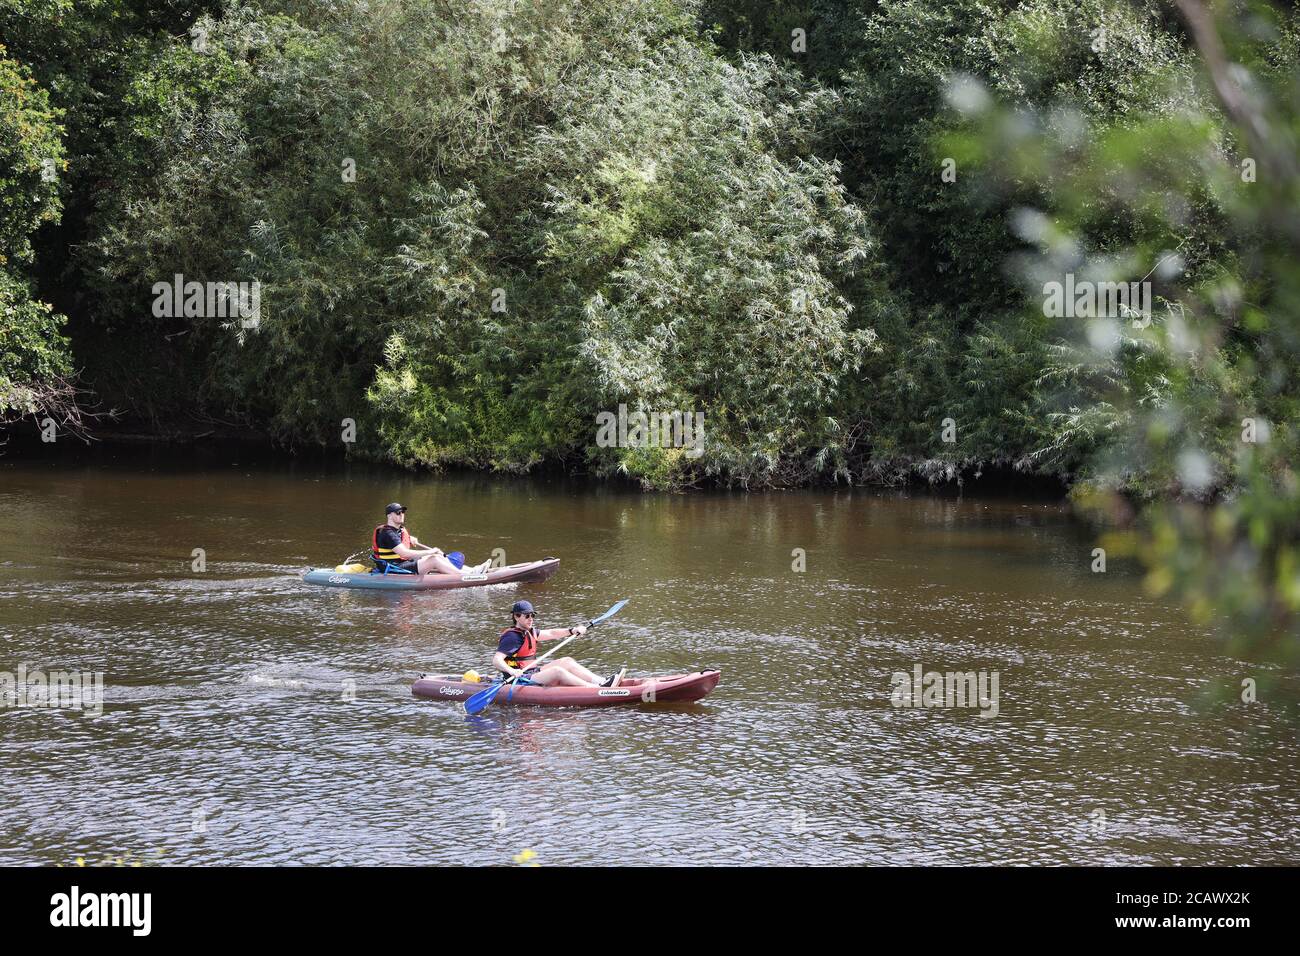 Canoa sul fiume Severn, Bridgnorth, Shropshire, regno unito Foto Stock